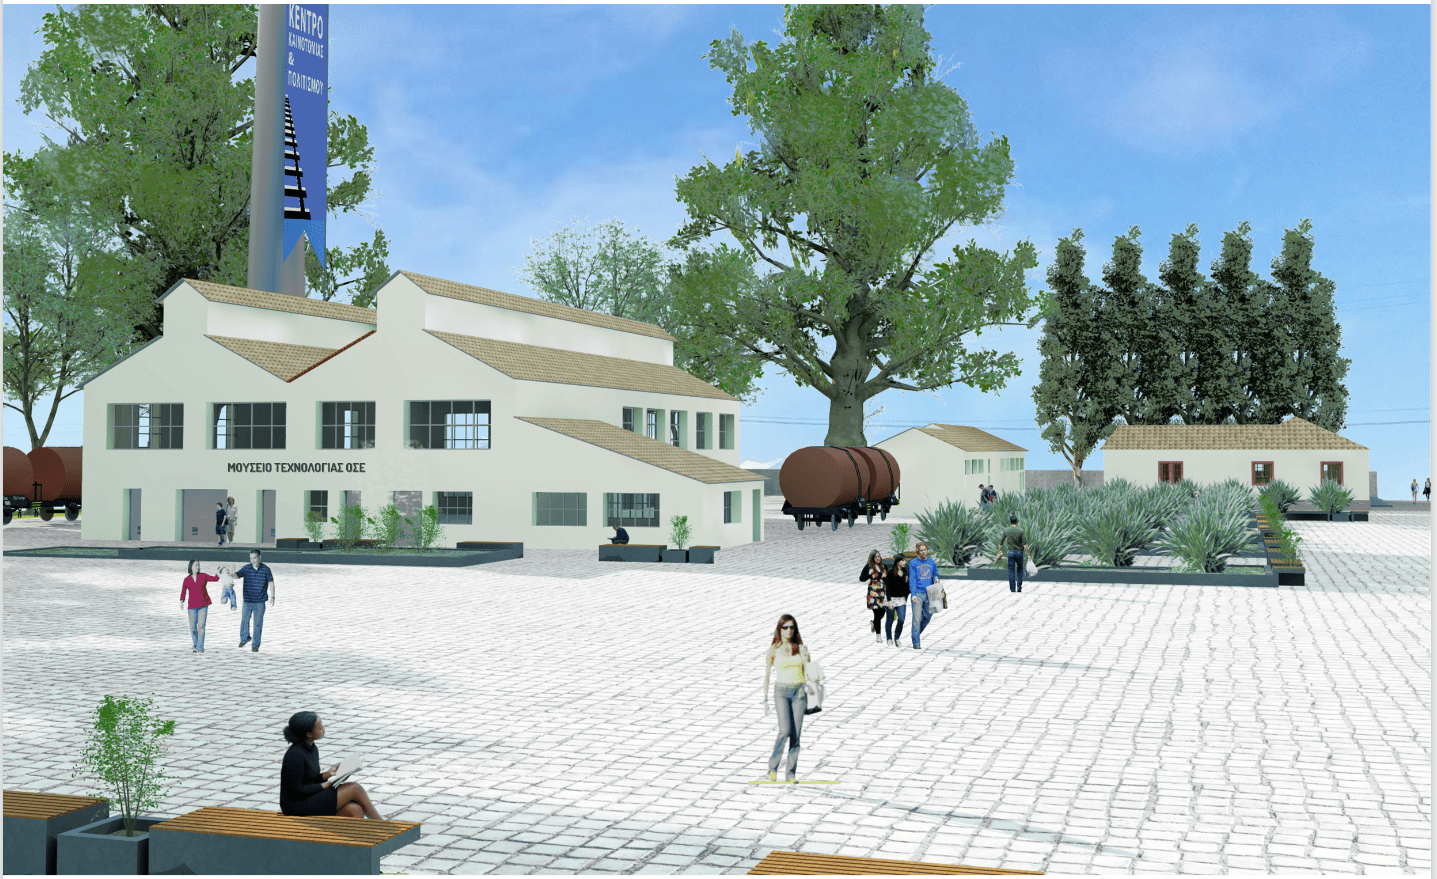 Εκεί που η τέχνη αναδεικνύει την ιστορία – Το σχέδιο του Δήμου Κατερίνης για το Εργοστάσιο Εμποτισμού του ΟΣΕ - Φωτογραφία 1